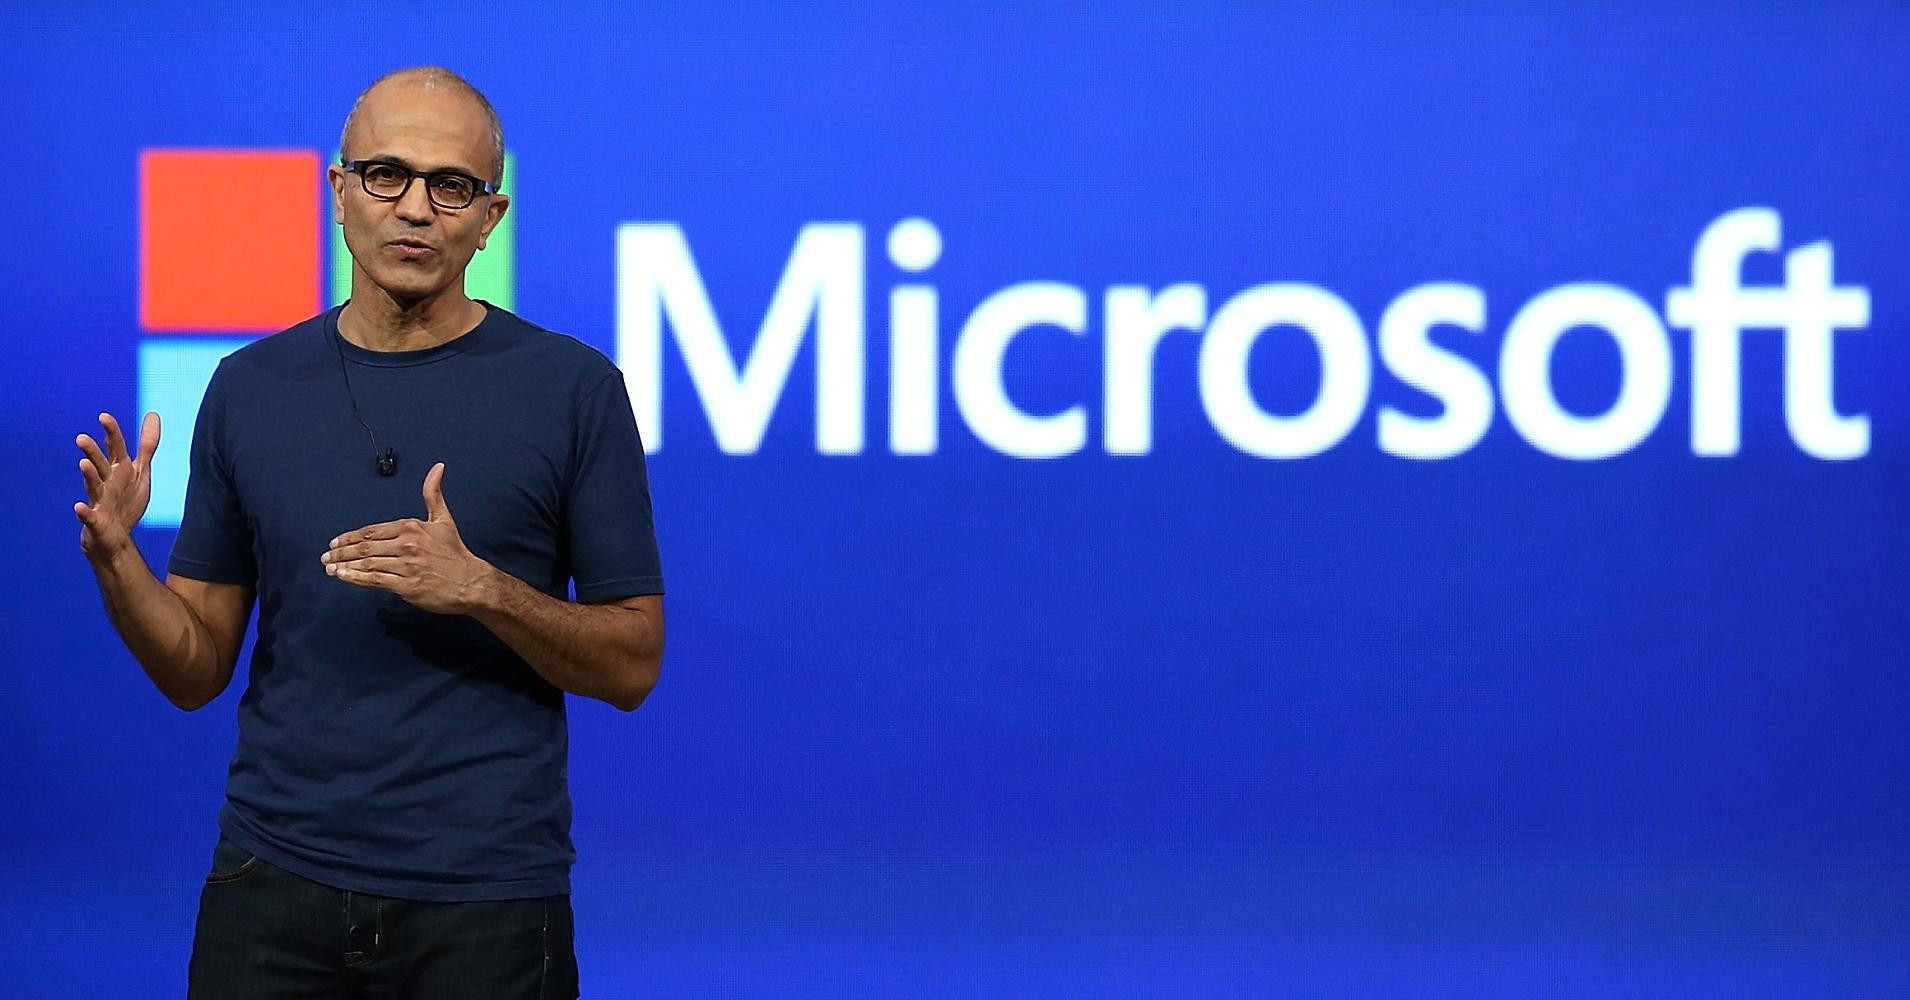 Des employés de Microsoft demandent à l'entreprise de cesser de collaborer avec la police